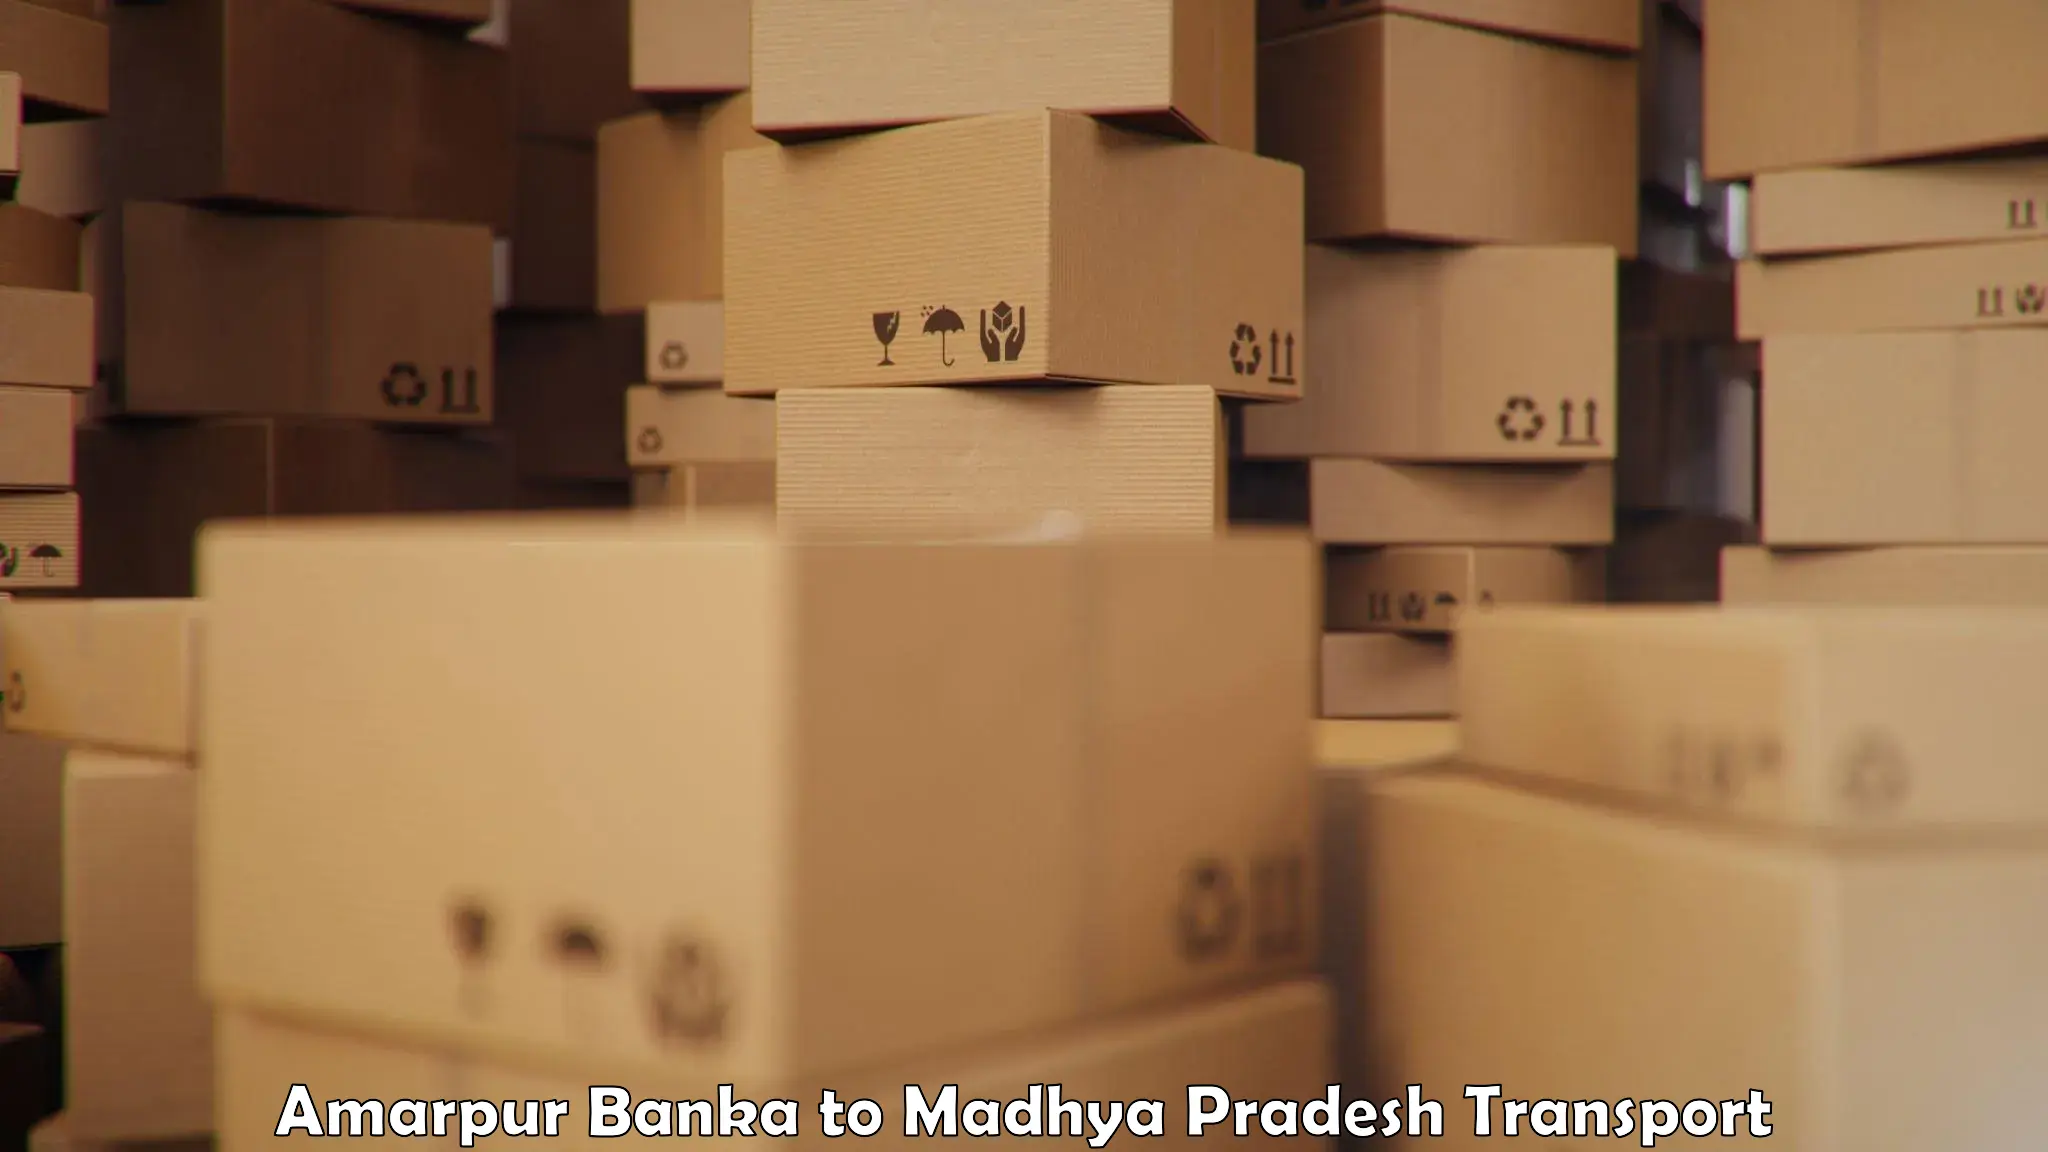 Road transport online services Amarpur Banka to Nalkheda